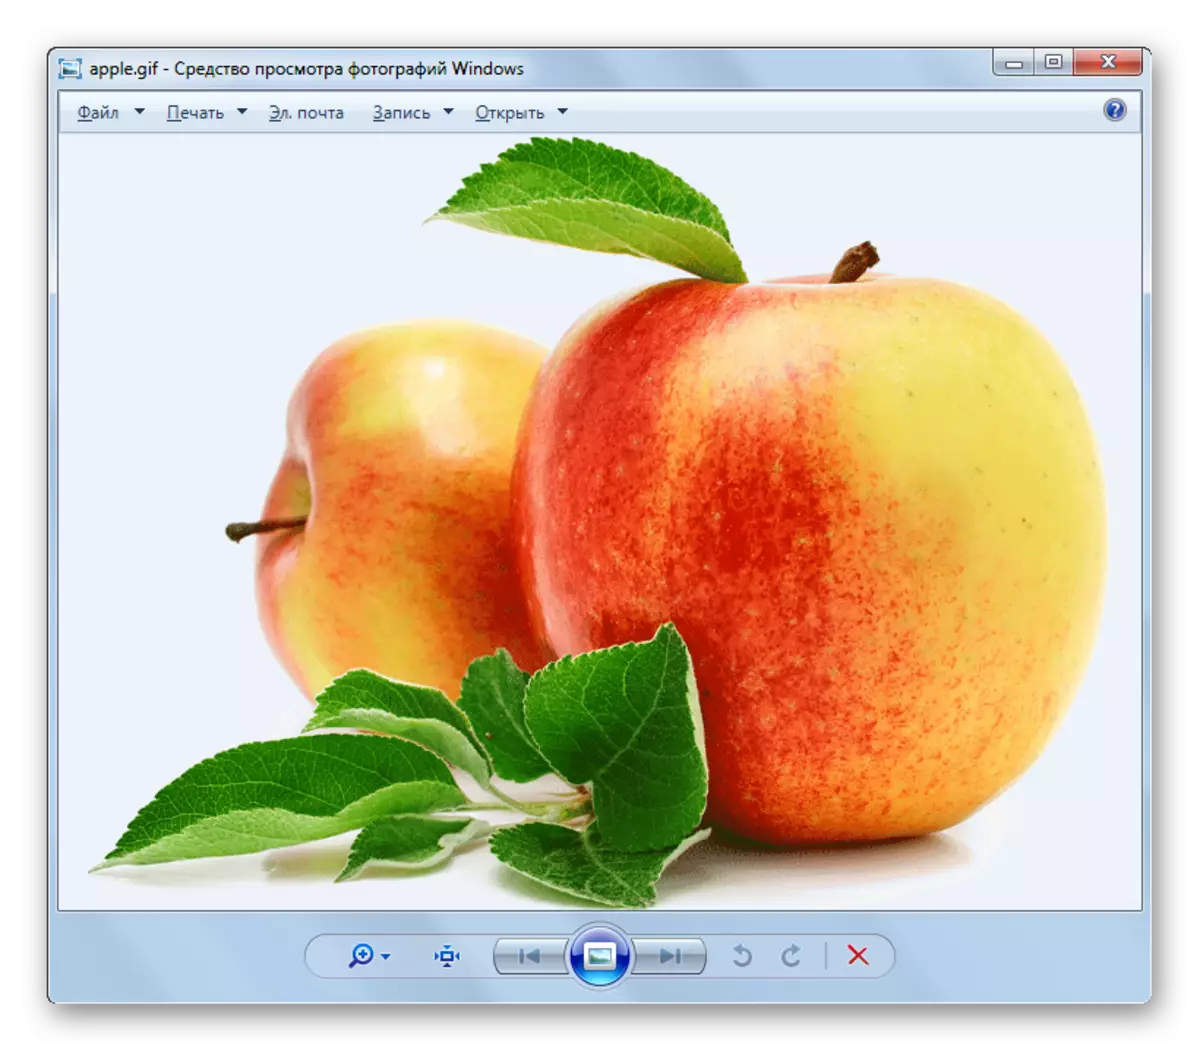 GIF faylı standart Windows görüntü görüntü agentində açıqdır